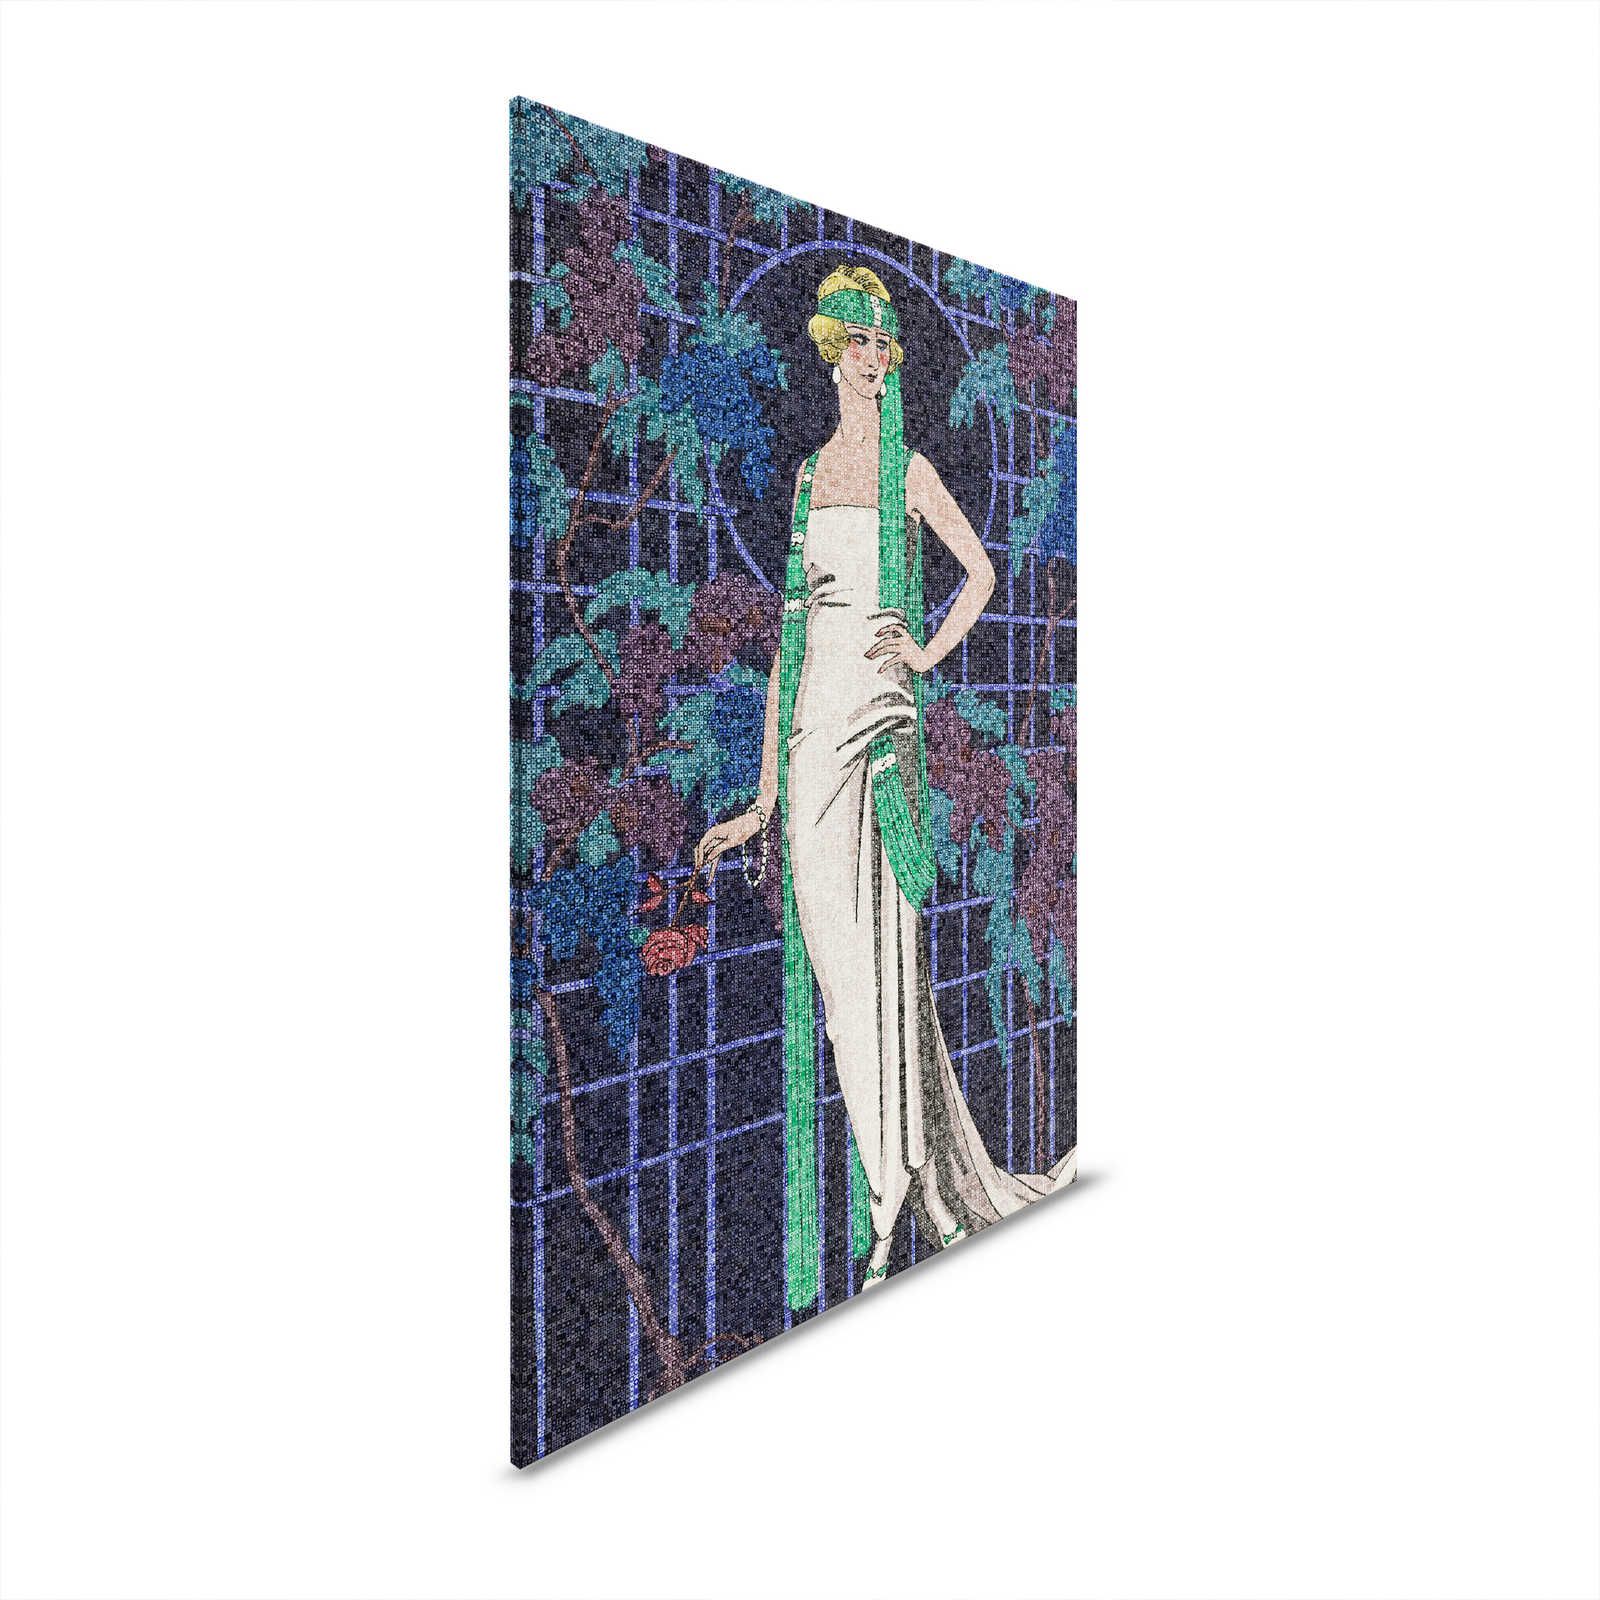 Scala 2 - Mozaïek Canvas Schilderij Art Deco Vrouwen Motief jaren 20 Stijl - 0.60 m x 0.90 m
